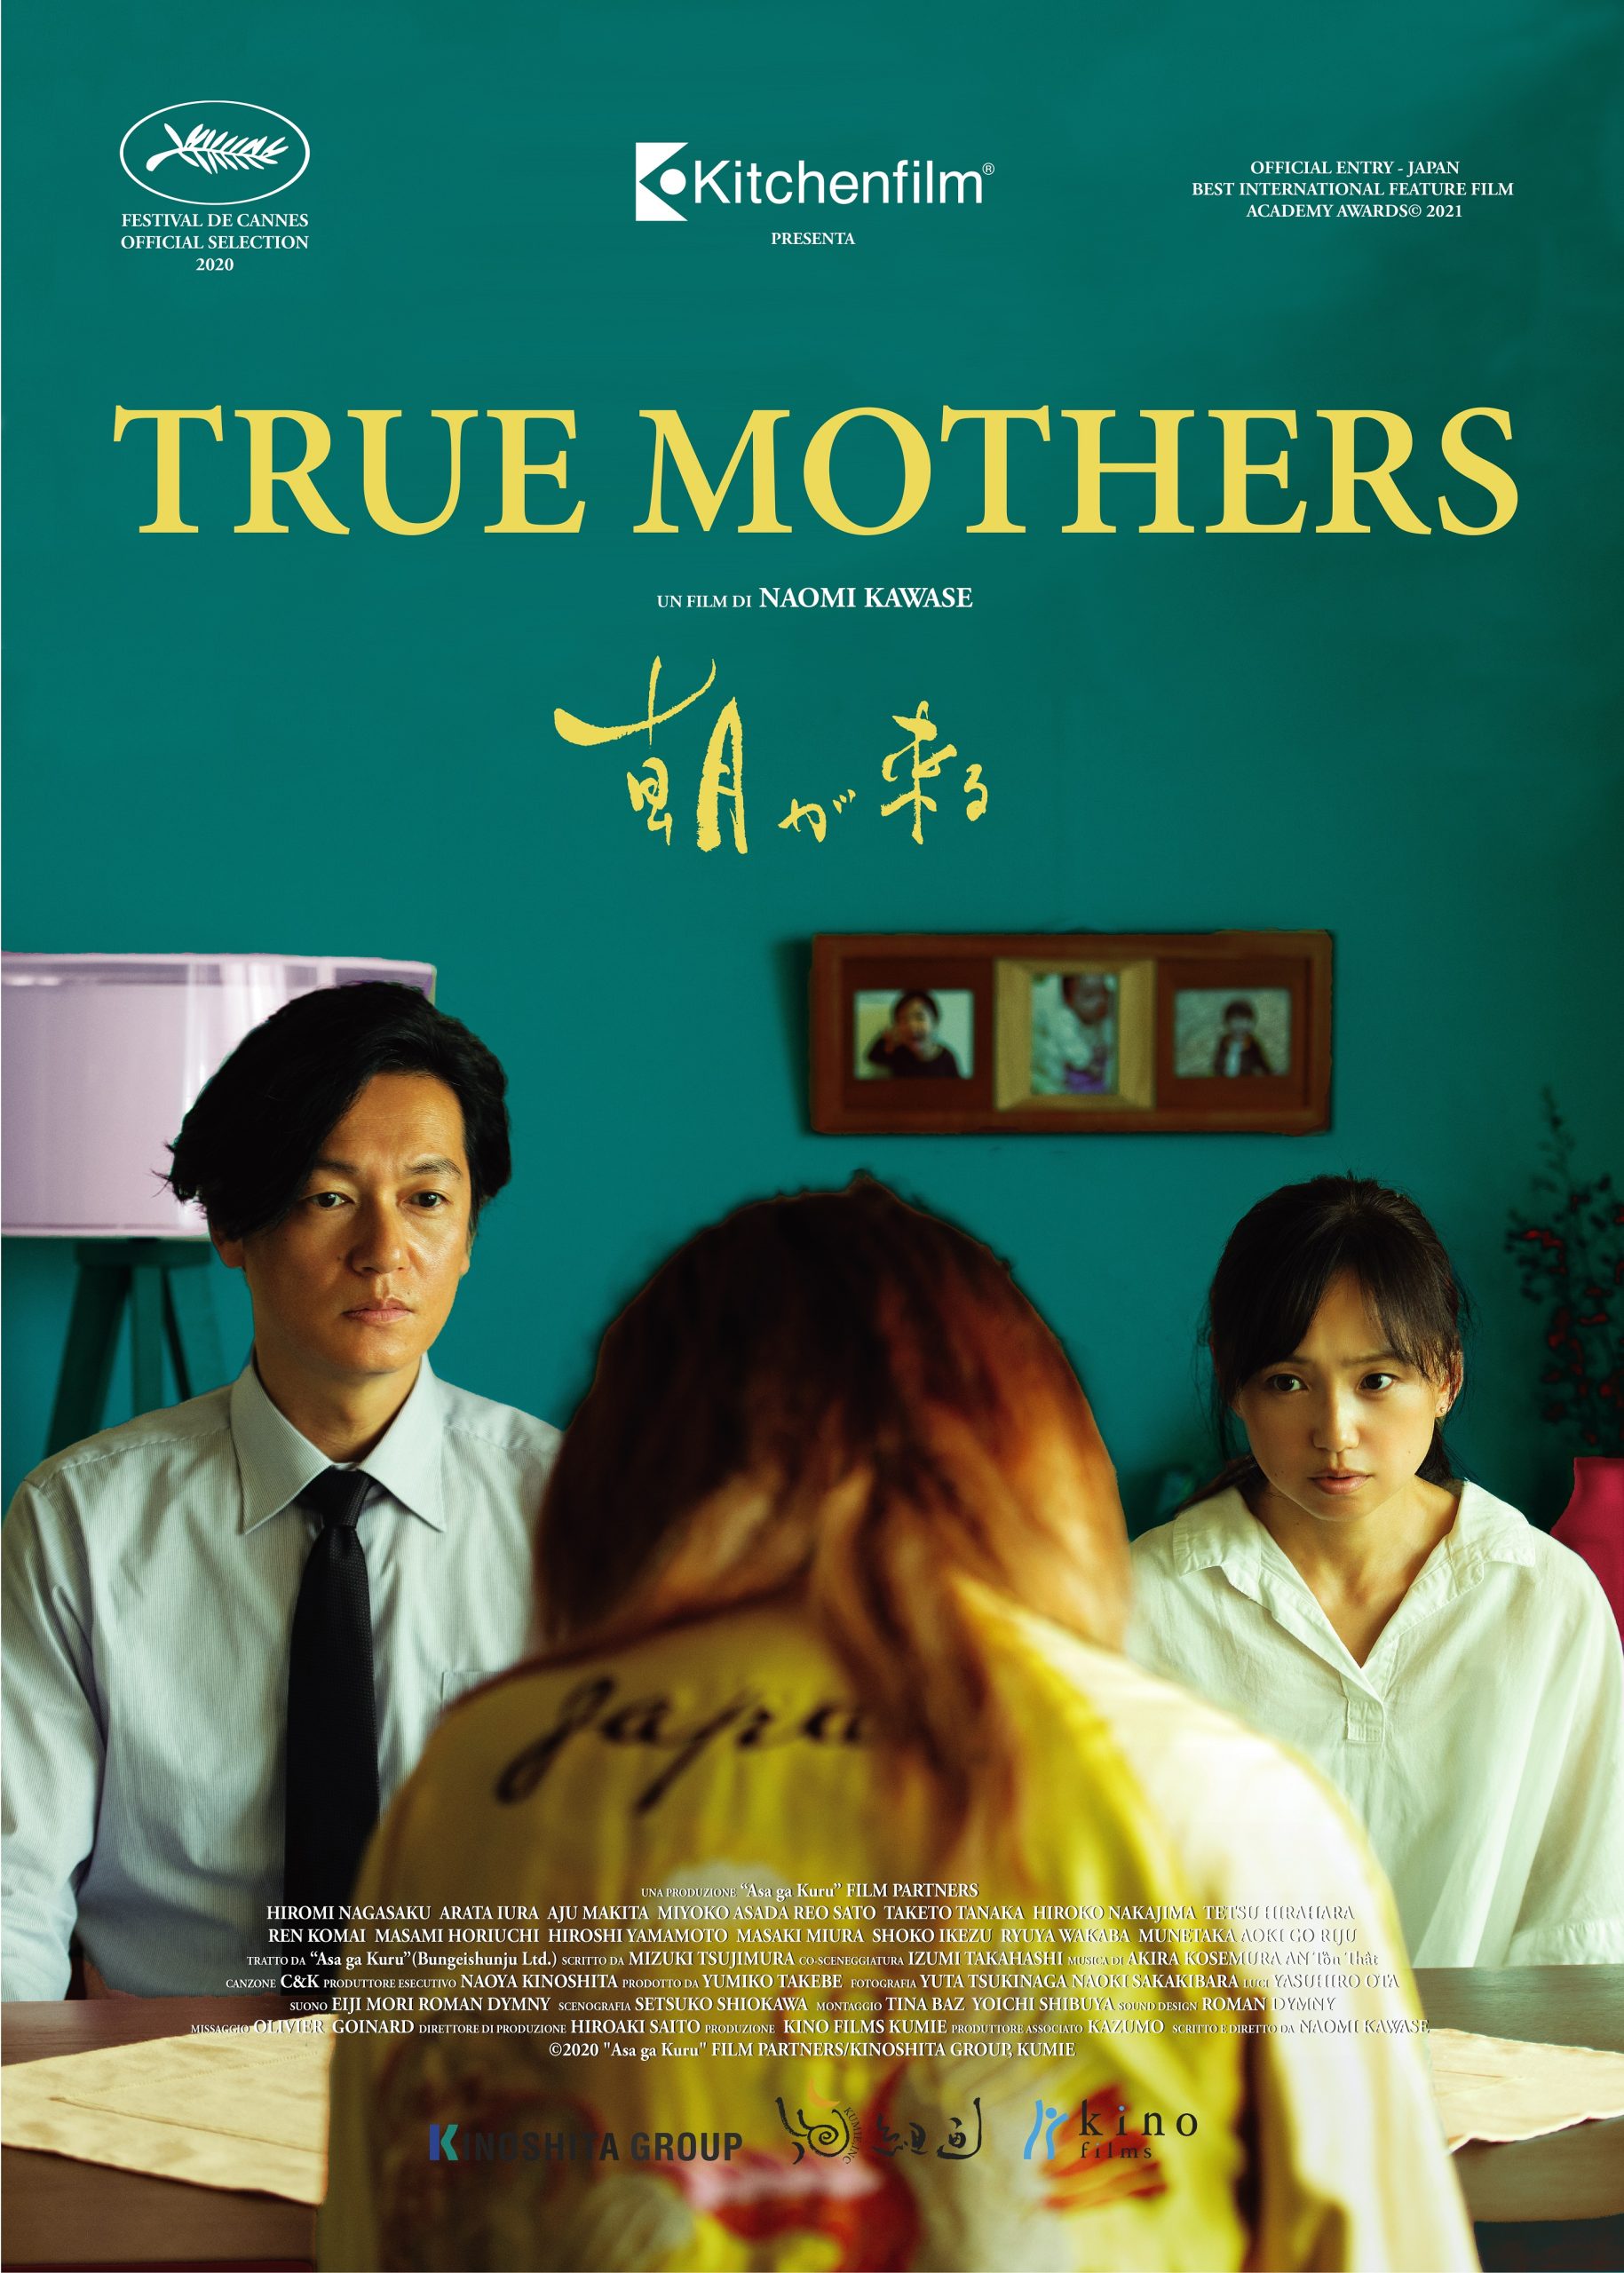 True Mothers di Naomi Kawase nelle sale dal 13 gennaio